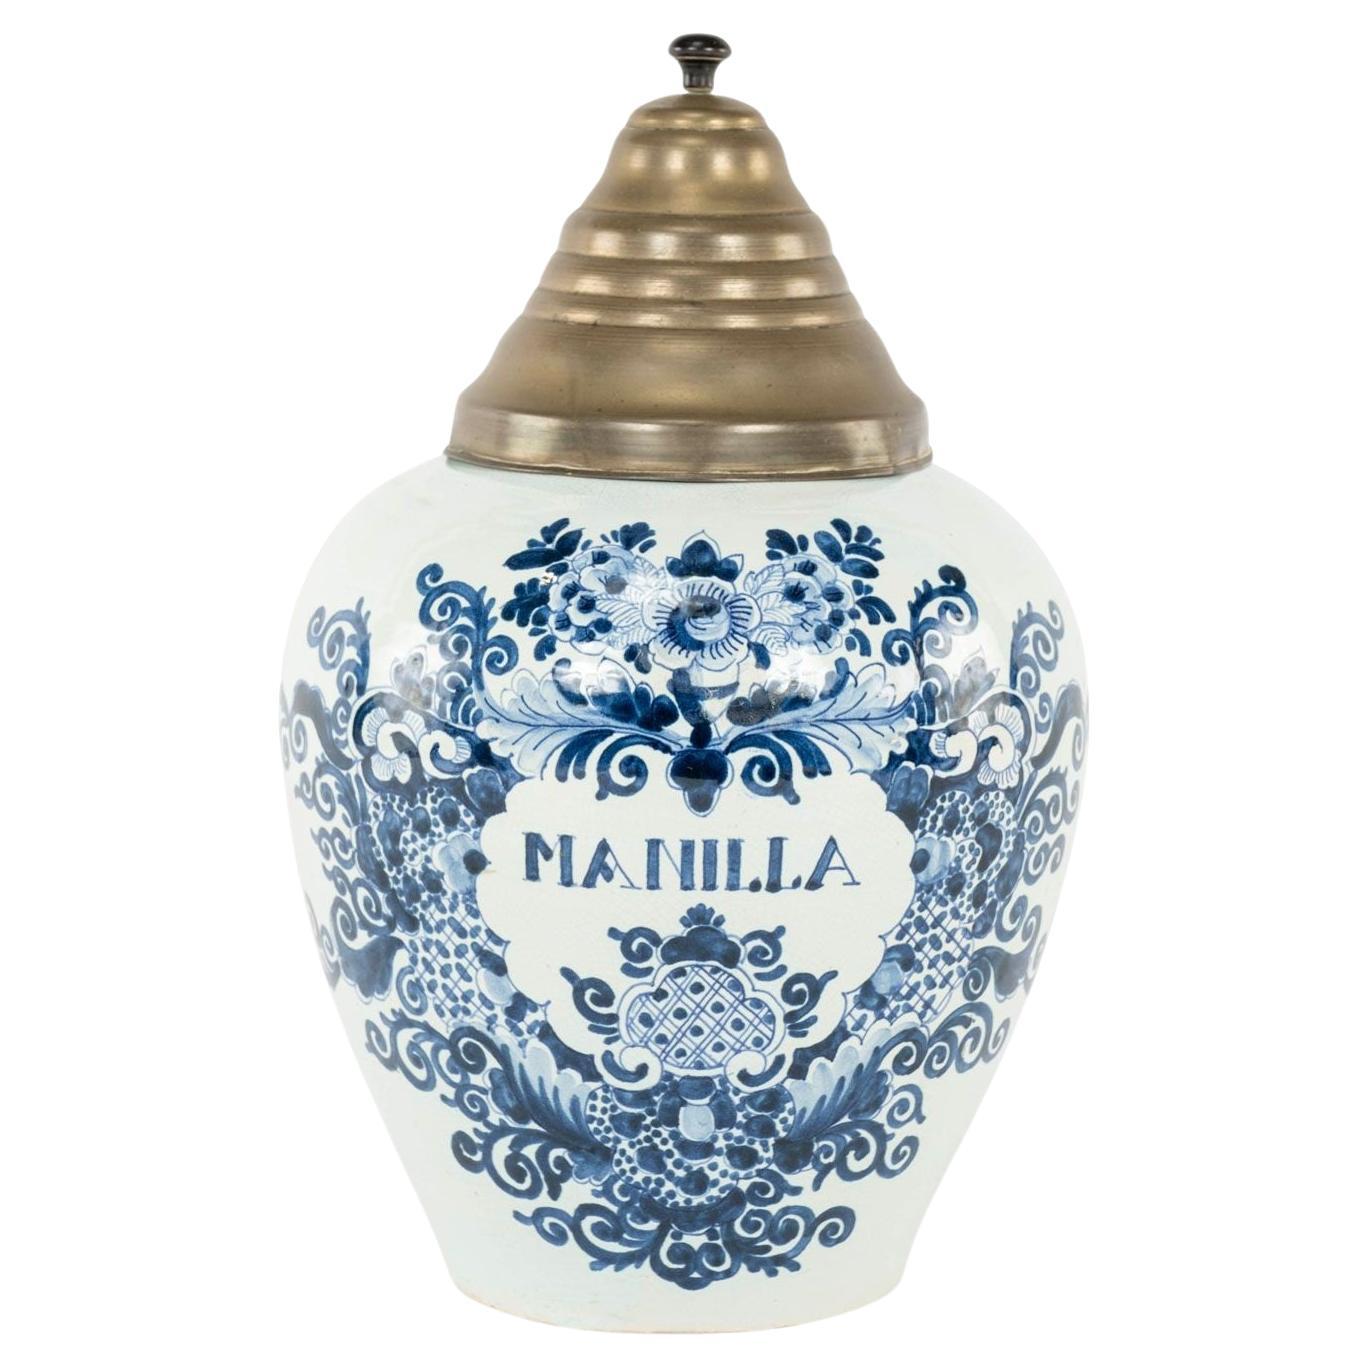 Delft Blue and White "Manilla" Tobacco Jar